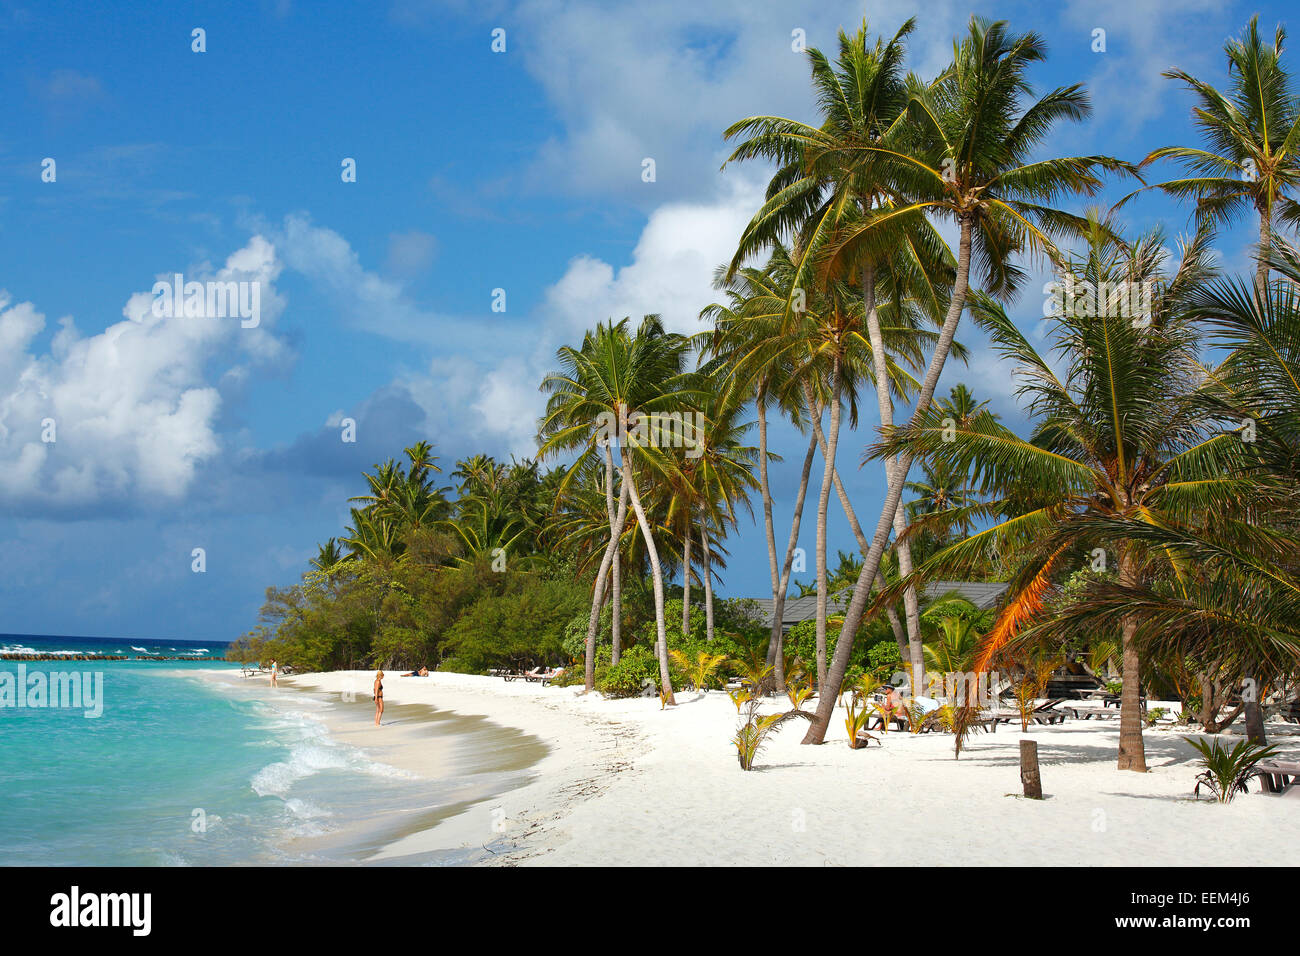 Plage avec des palmiers sur l'Océan Indien, sable blanc et cocotiers (Cocos nucifera), l'île de Kuredu, Kuredu Island Resort Banque D'Images